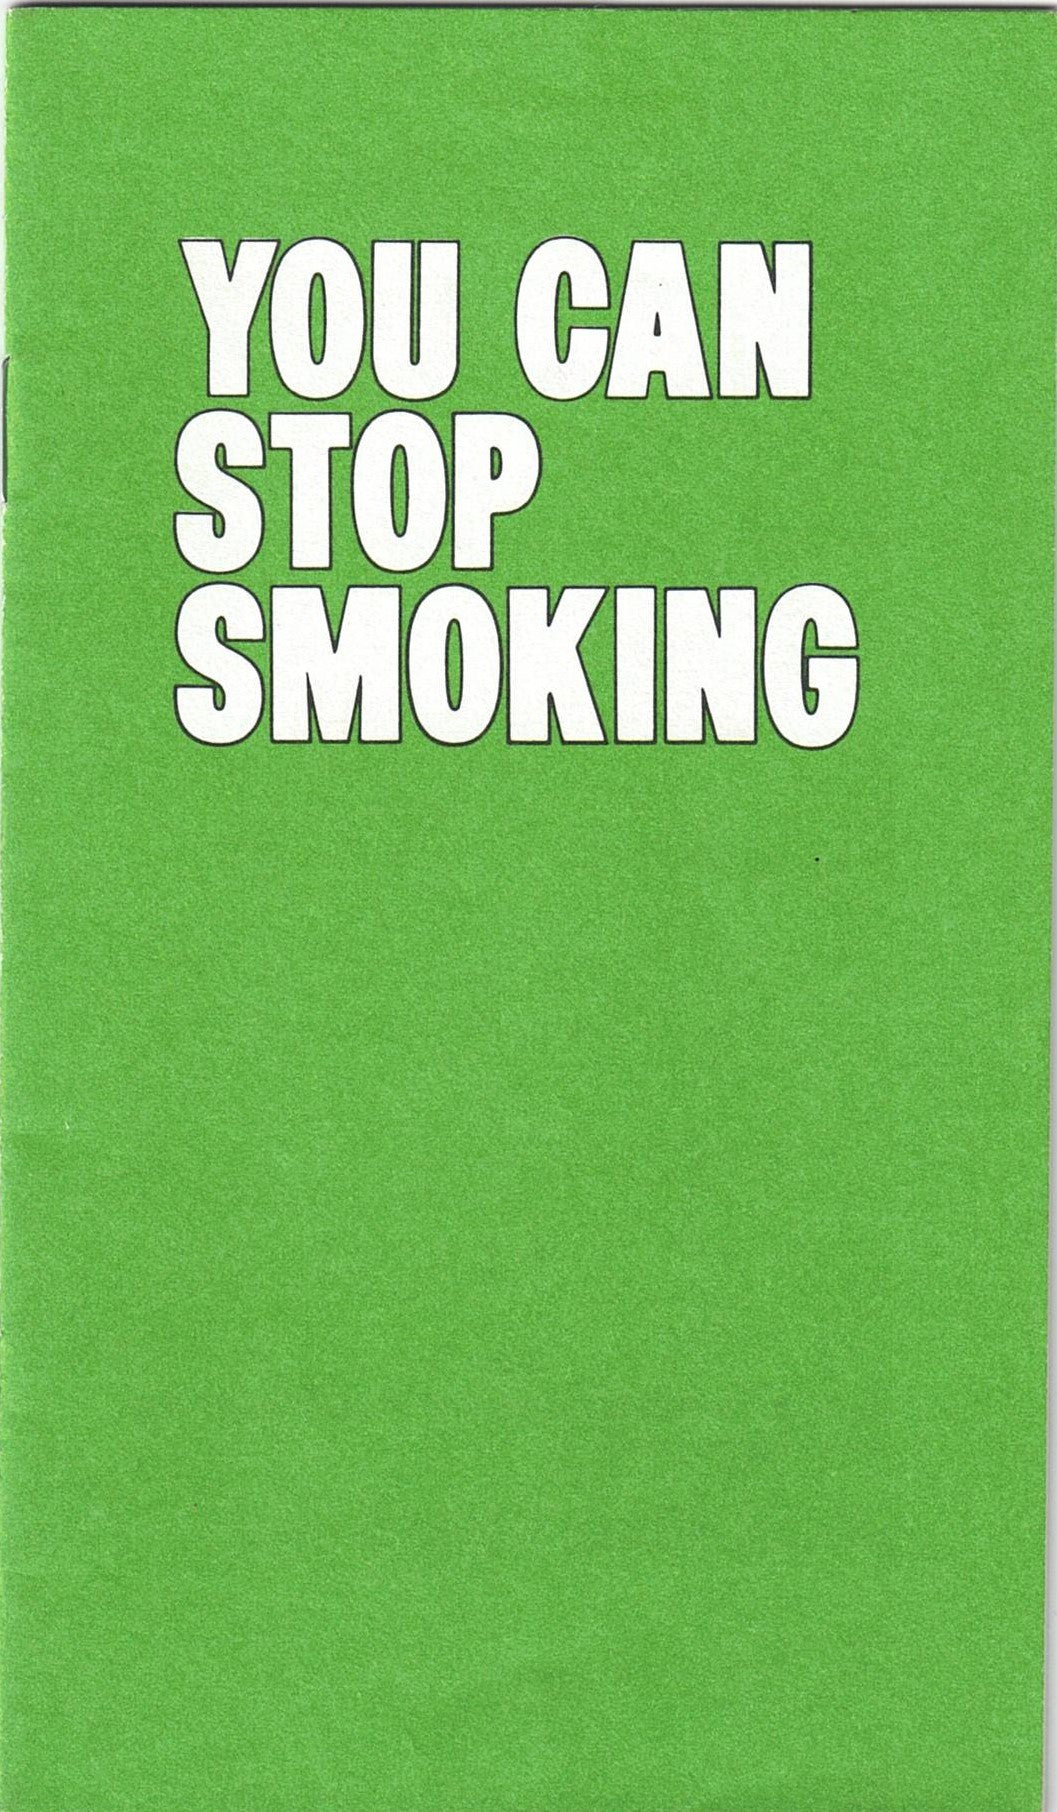 You can stop smoking